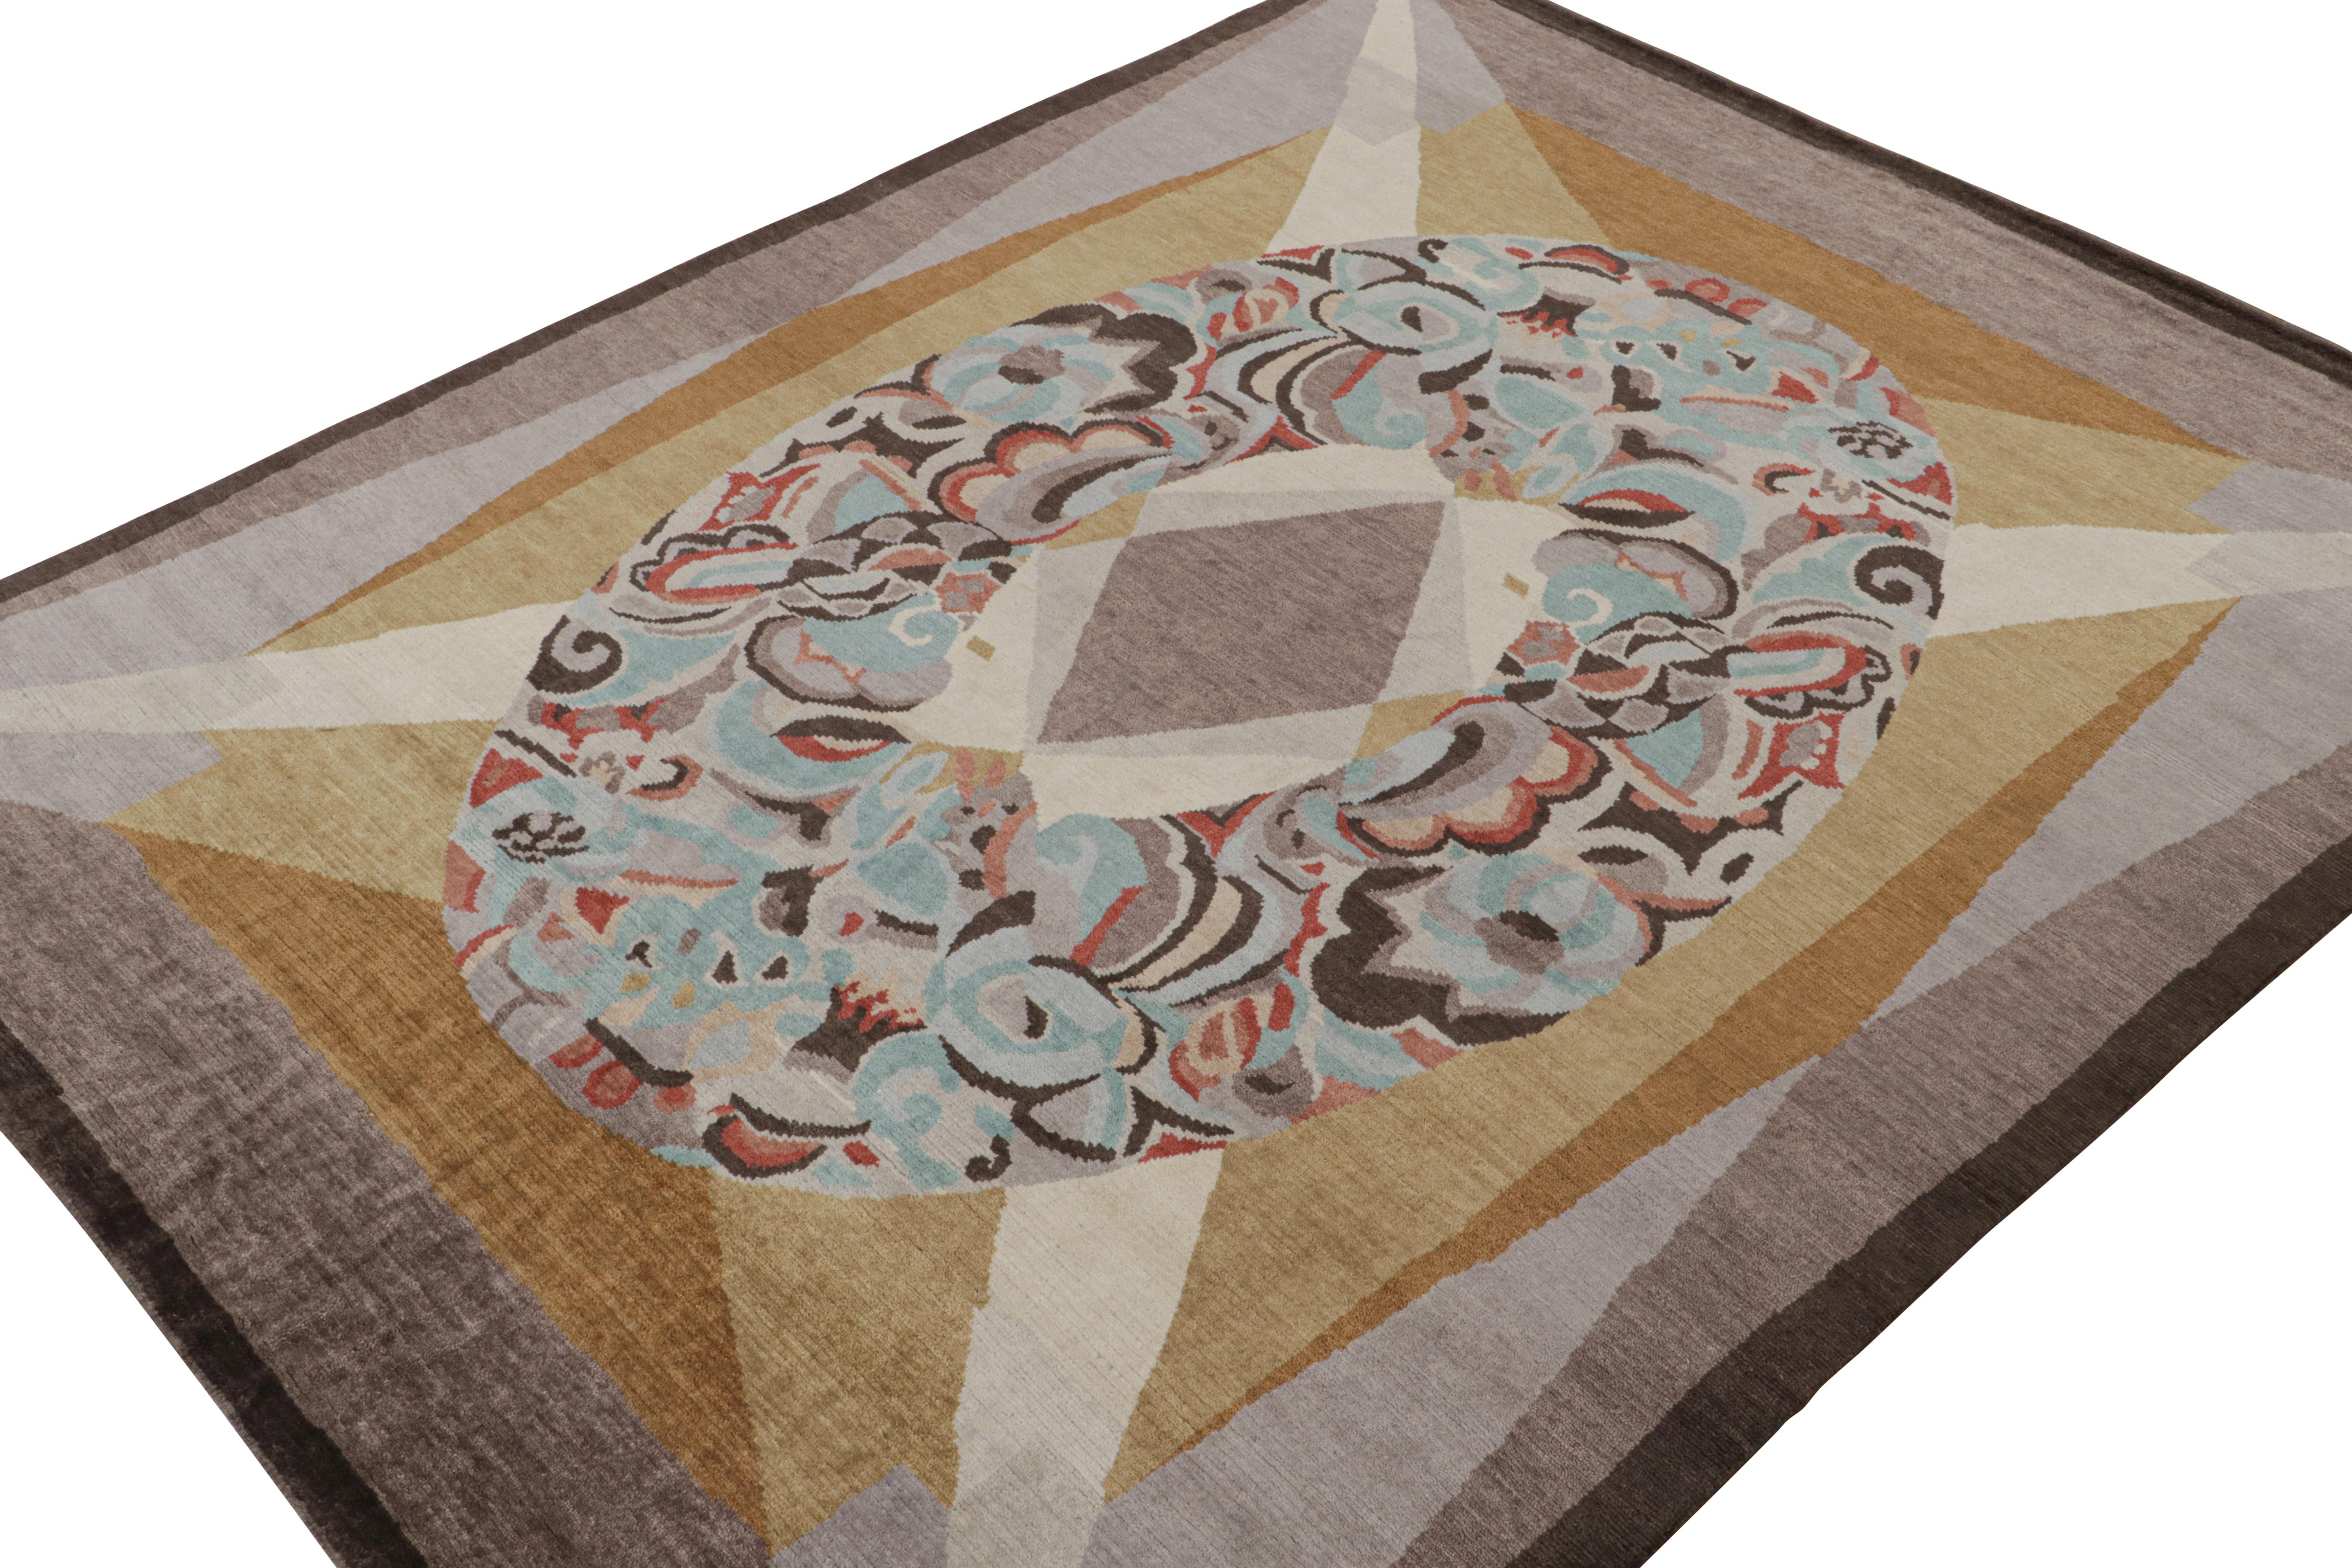 Dieser moderne, handgeknüpfte Wollteppich im Format 9x12 stammt aus der French Art Deco Teppichkollektion von Rug & Kilim.

Über das Design

Dieses Stück ist vom titelgebenden europäischen Stil der 1920er Jahre inspiriert und erfreut sich eines